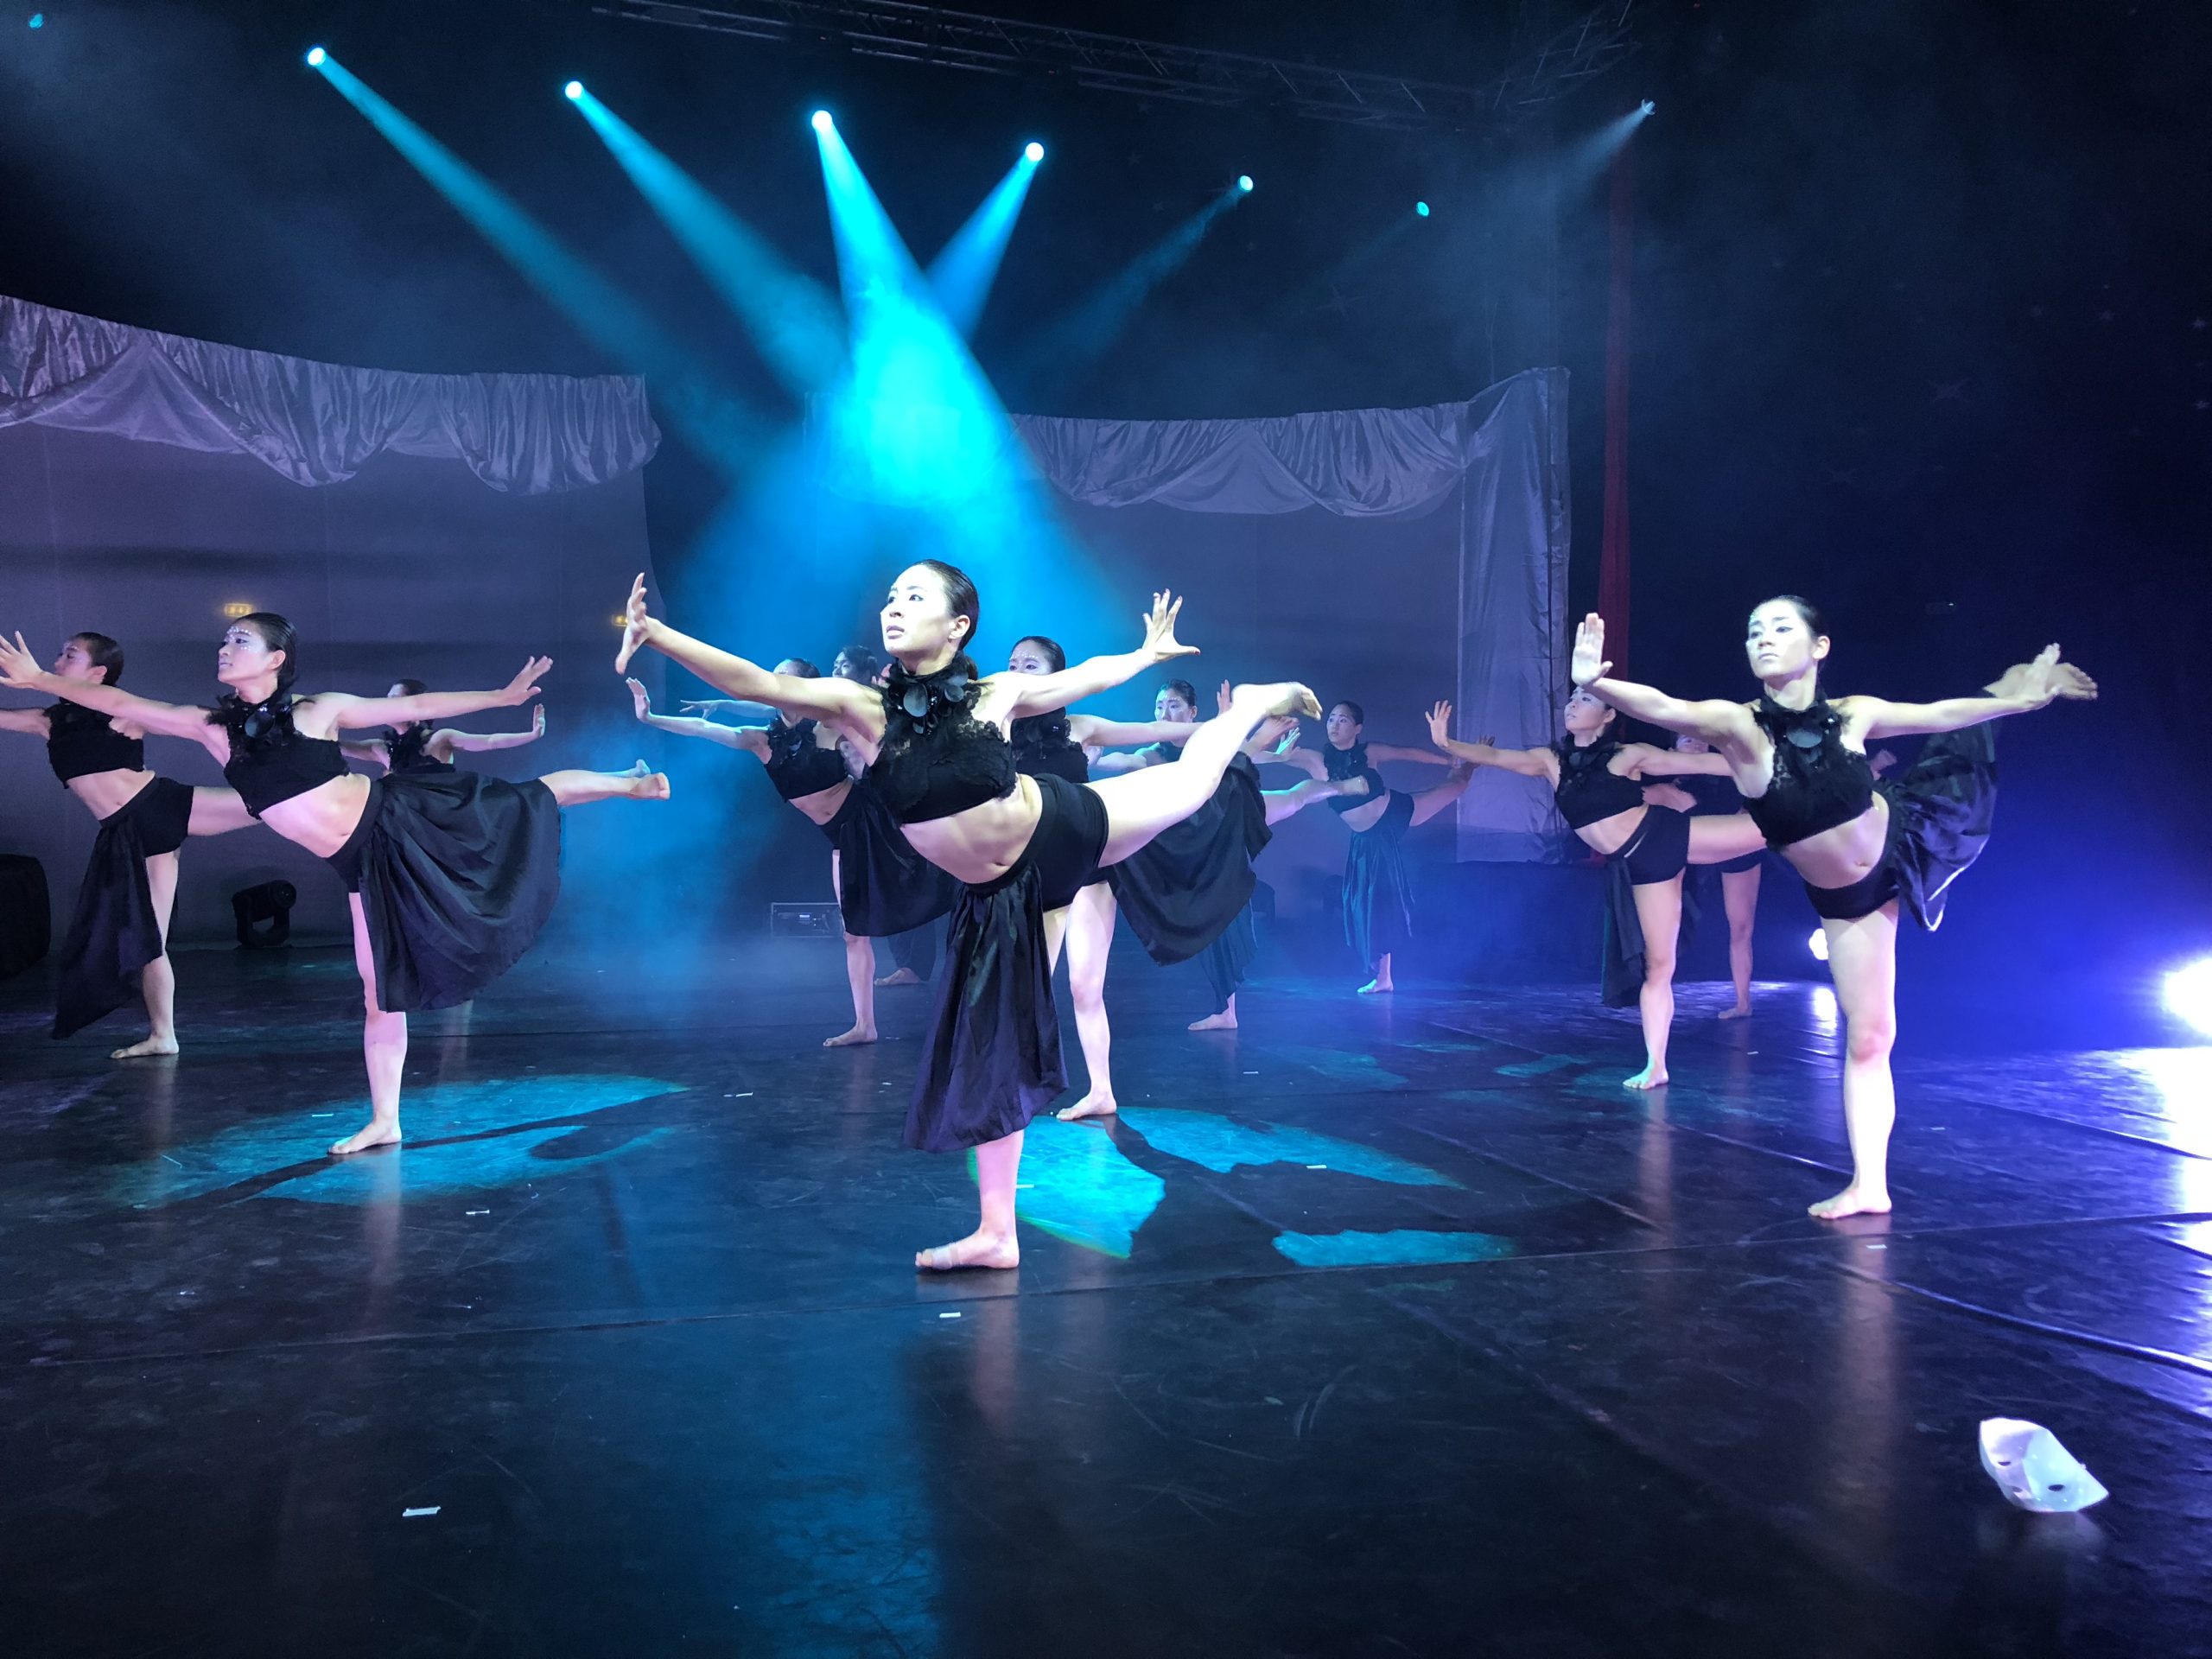 BDCとのコラボレーションで、イタリアのご自身のショー「Unconventional Circus」にBDCのダンサーたちが出演しましたね。その時のことを教えてください。